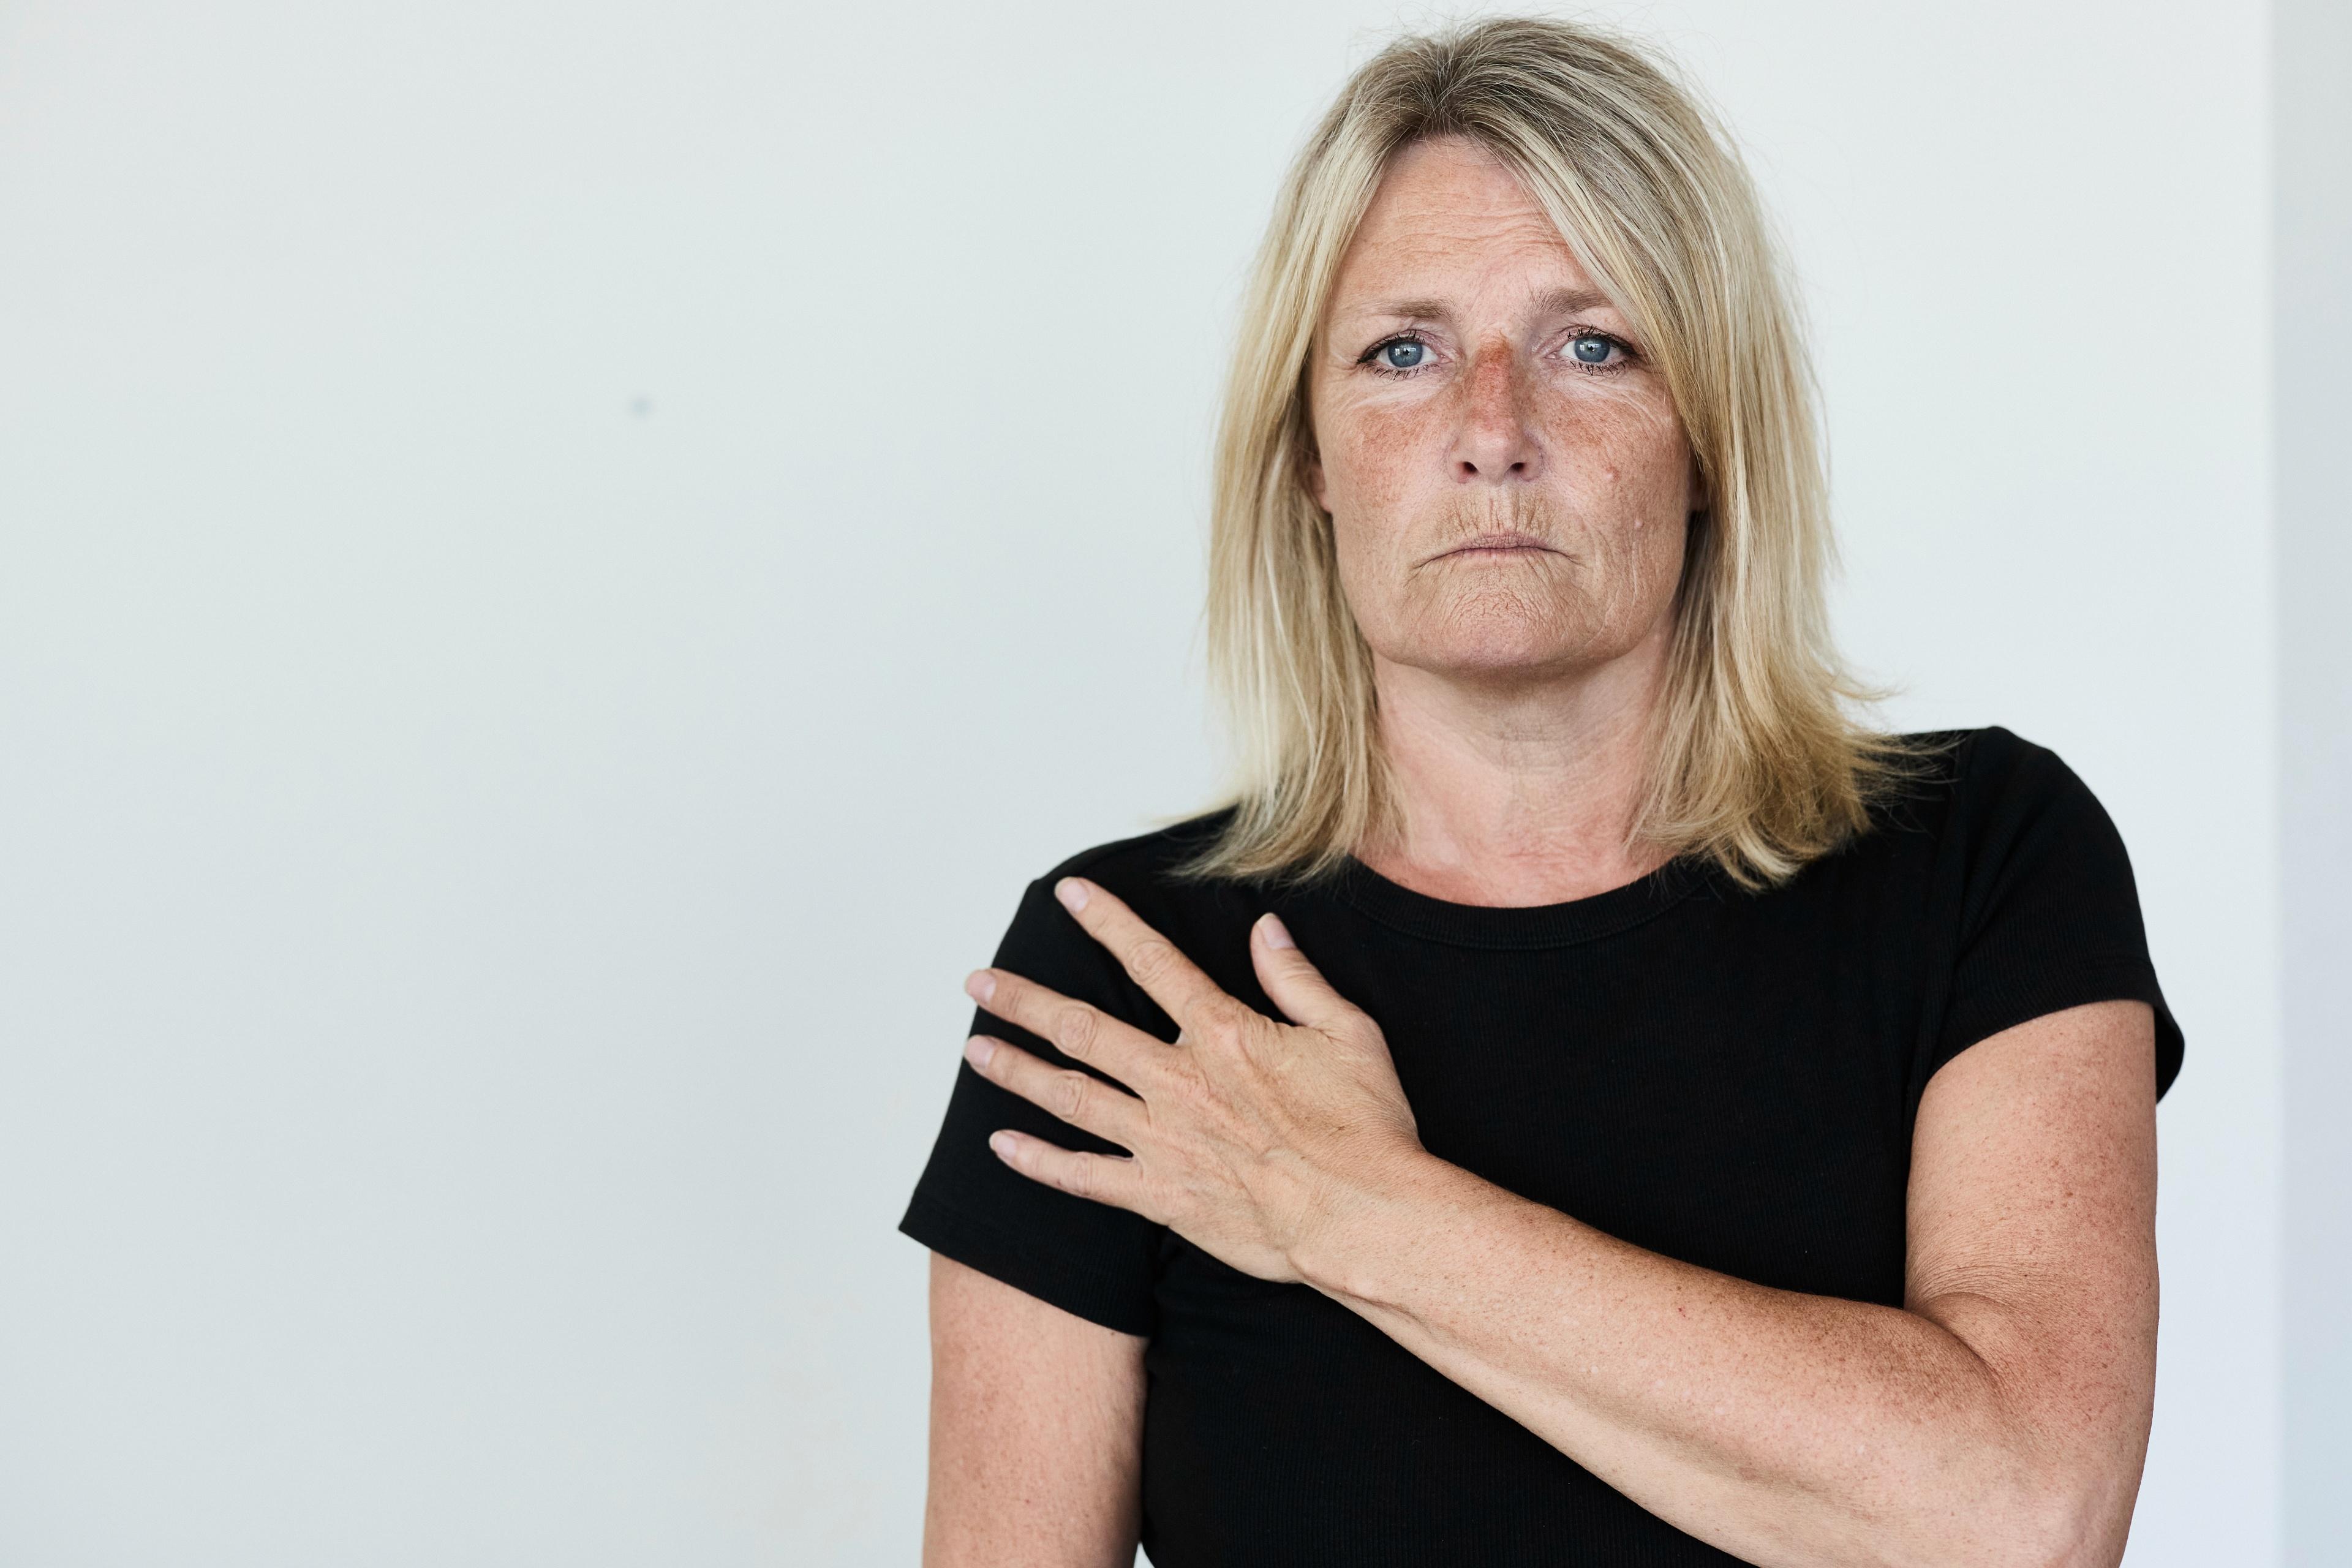 Ved kommunalvalget i 2017 satte Birgit Hansen danmarksrekord ved at vinde 42 pct. af alle afgivne stemmer i kommunen, og hun har været medlem af KL-bestyrelsen siden 2018. Ved KV25 forlader hun lokalpolitik. 